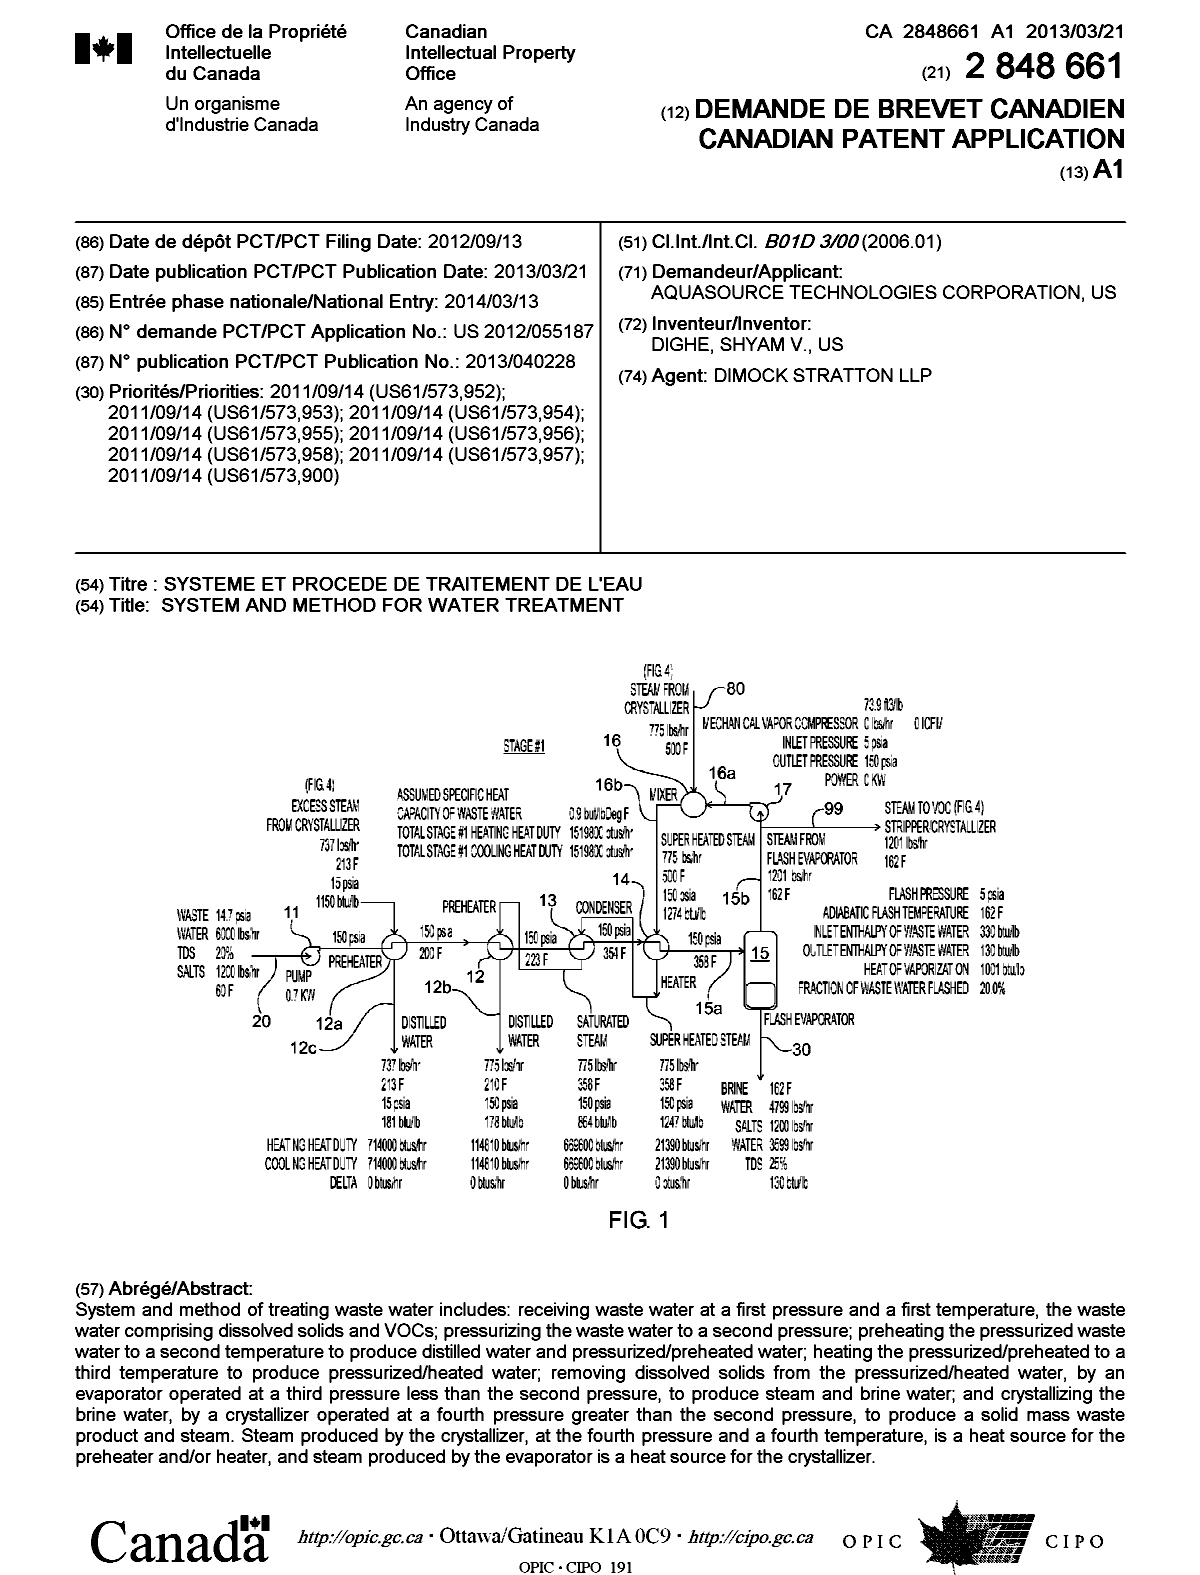 Document de brevet canadien 2848661. Page couverture 20131228. Image 1 de 1